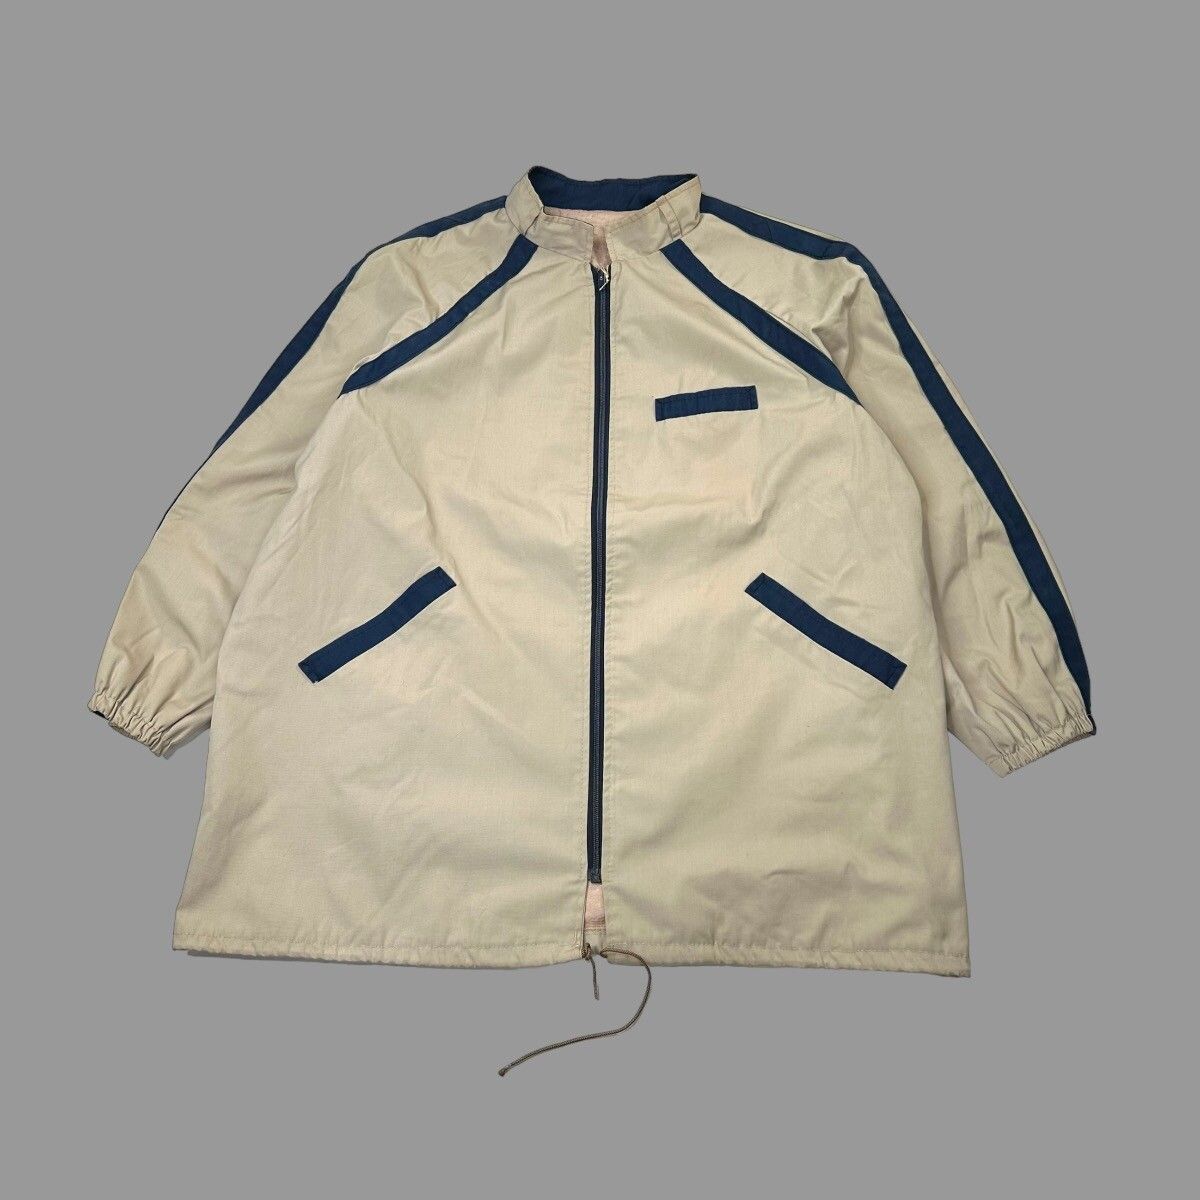 Vintage Vintage 1950s shop jacket Size US L / EU 52-54 / 3 - 1 Preview